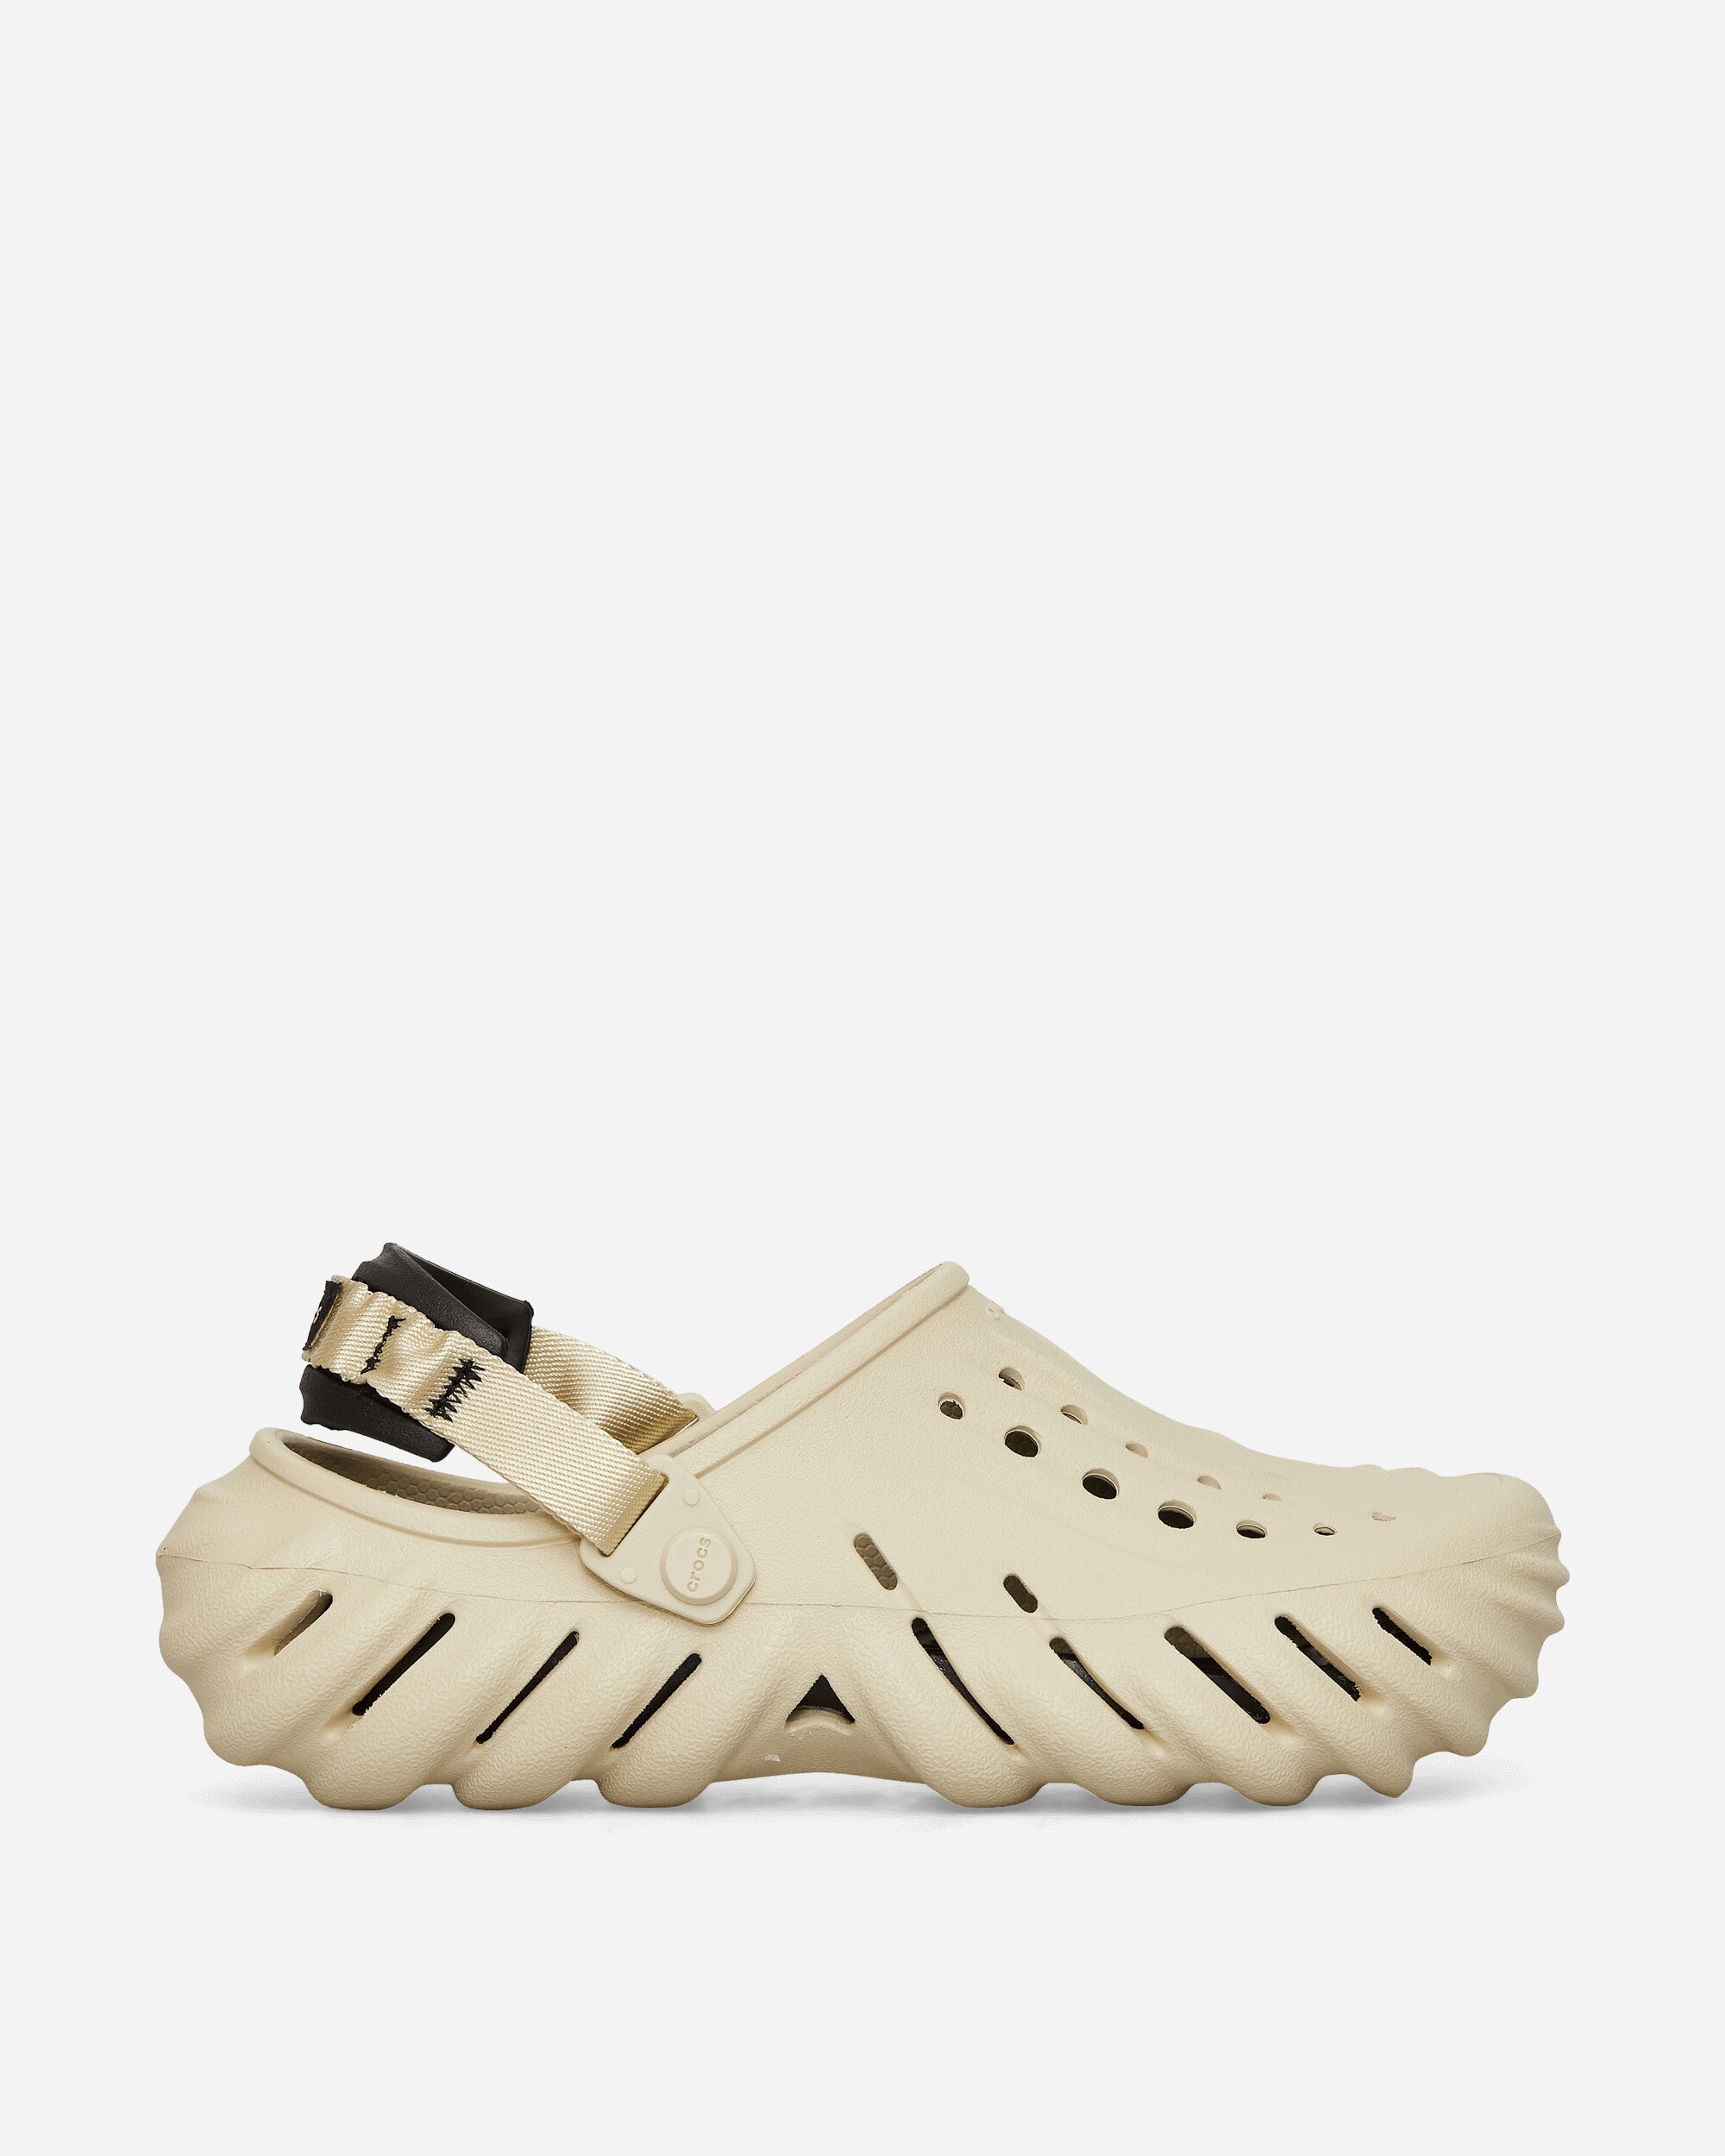 Crocs Echo Clog Bone/Black Sandals and Slides Sandals and Mules CR207937 BONEBLACK